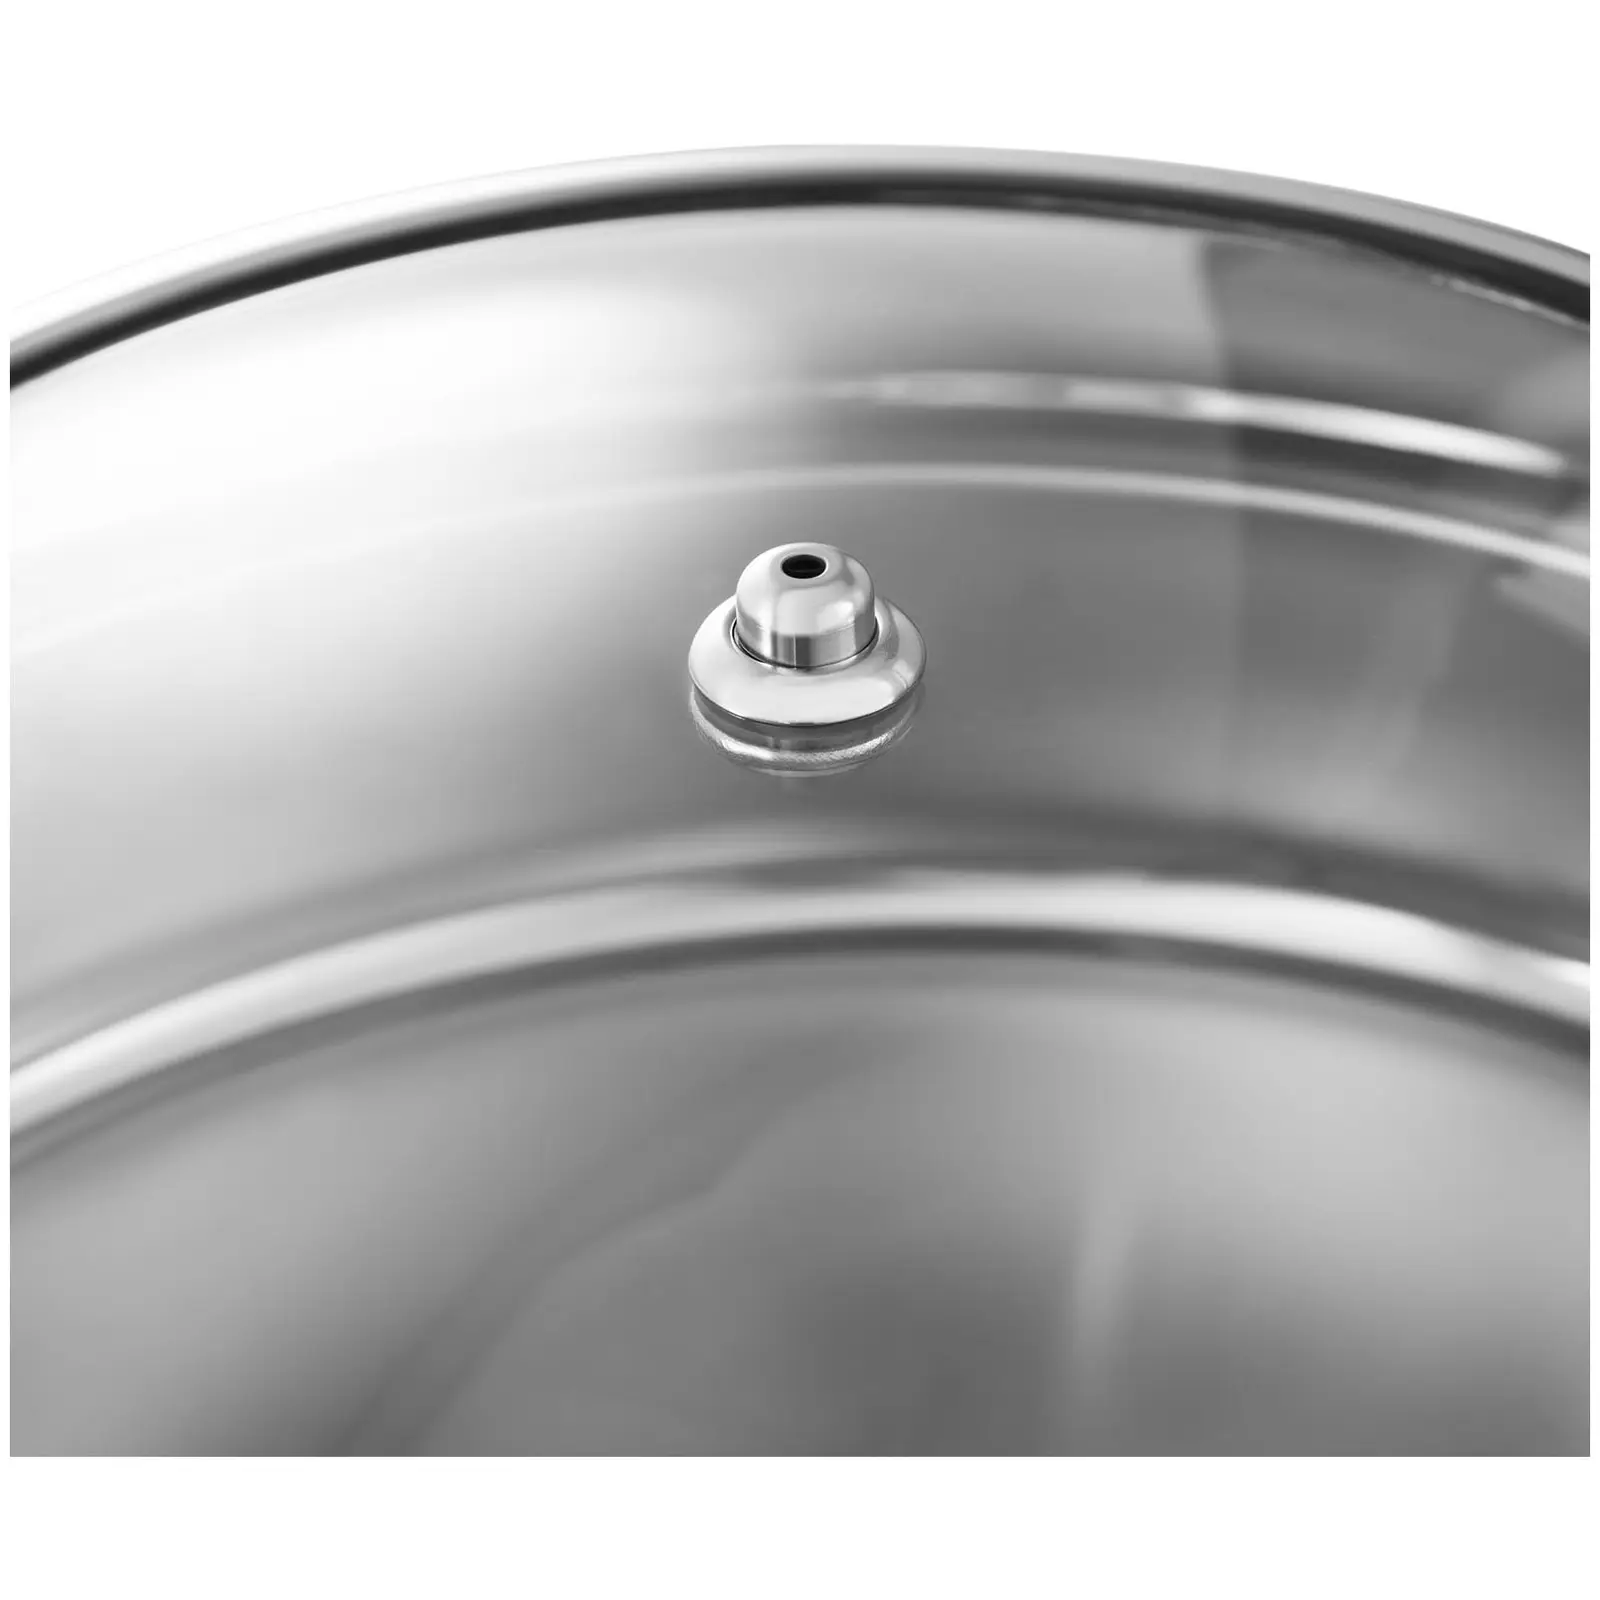 Chafing dish - kulatý s okénkem - Royal Catering - 5,5 l - 1 x palivový článek